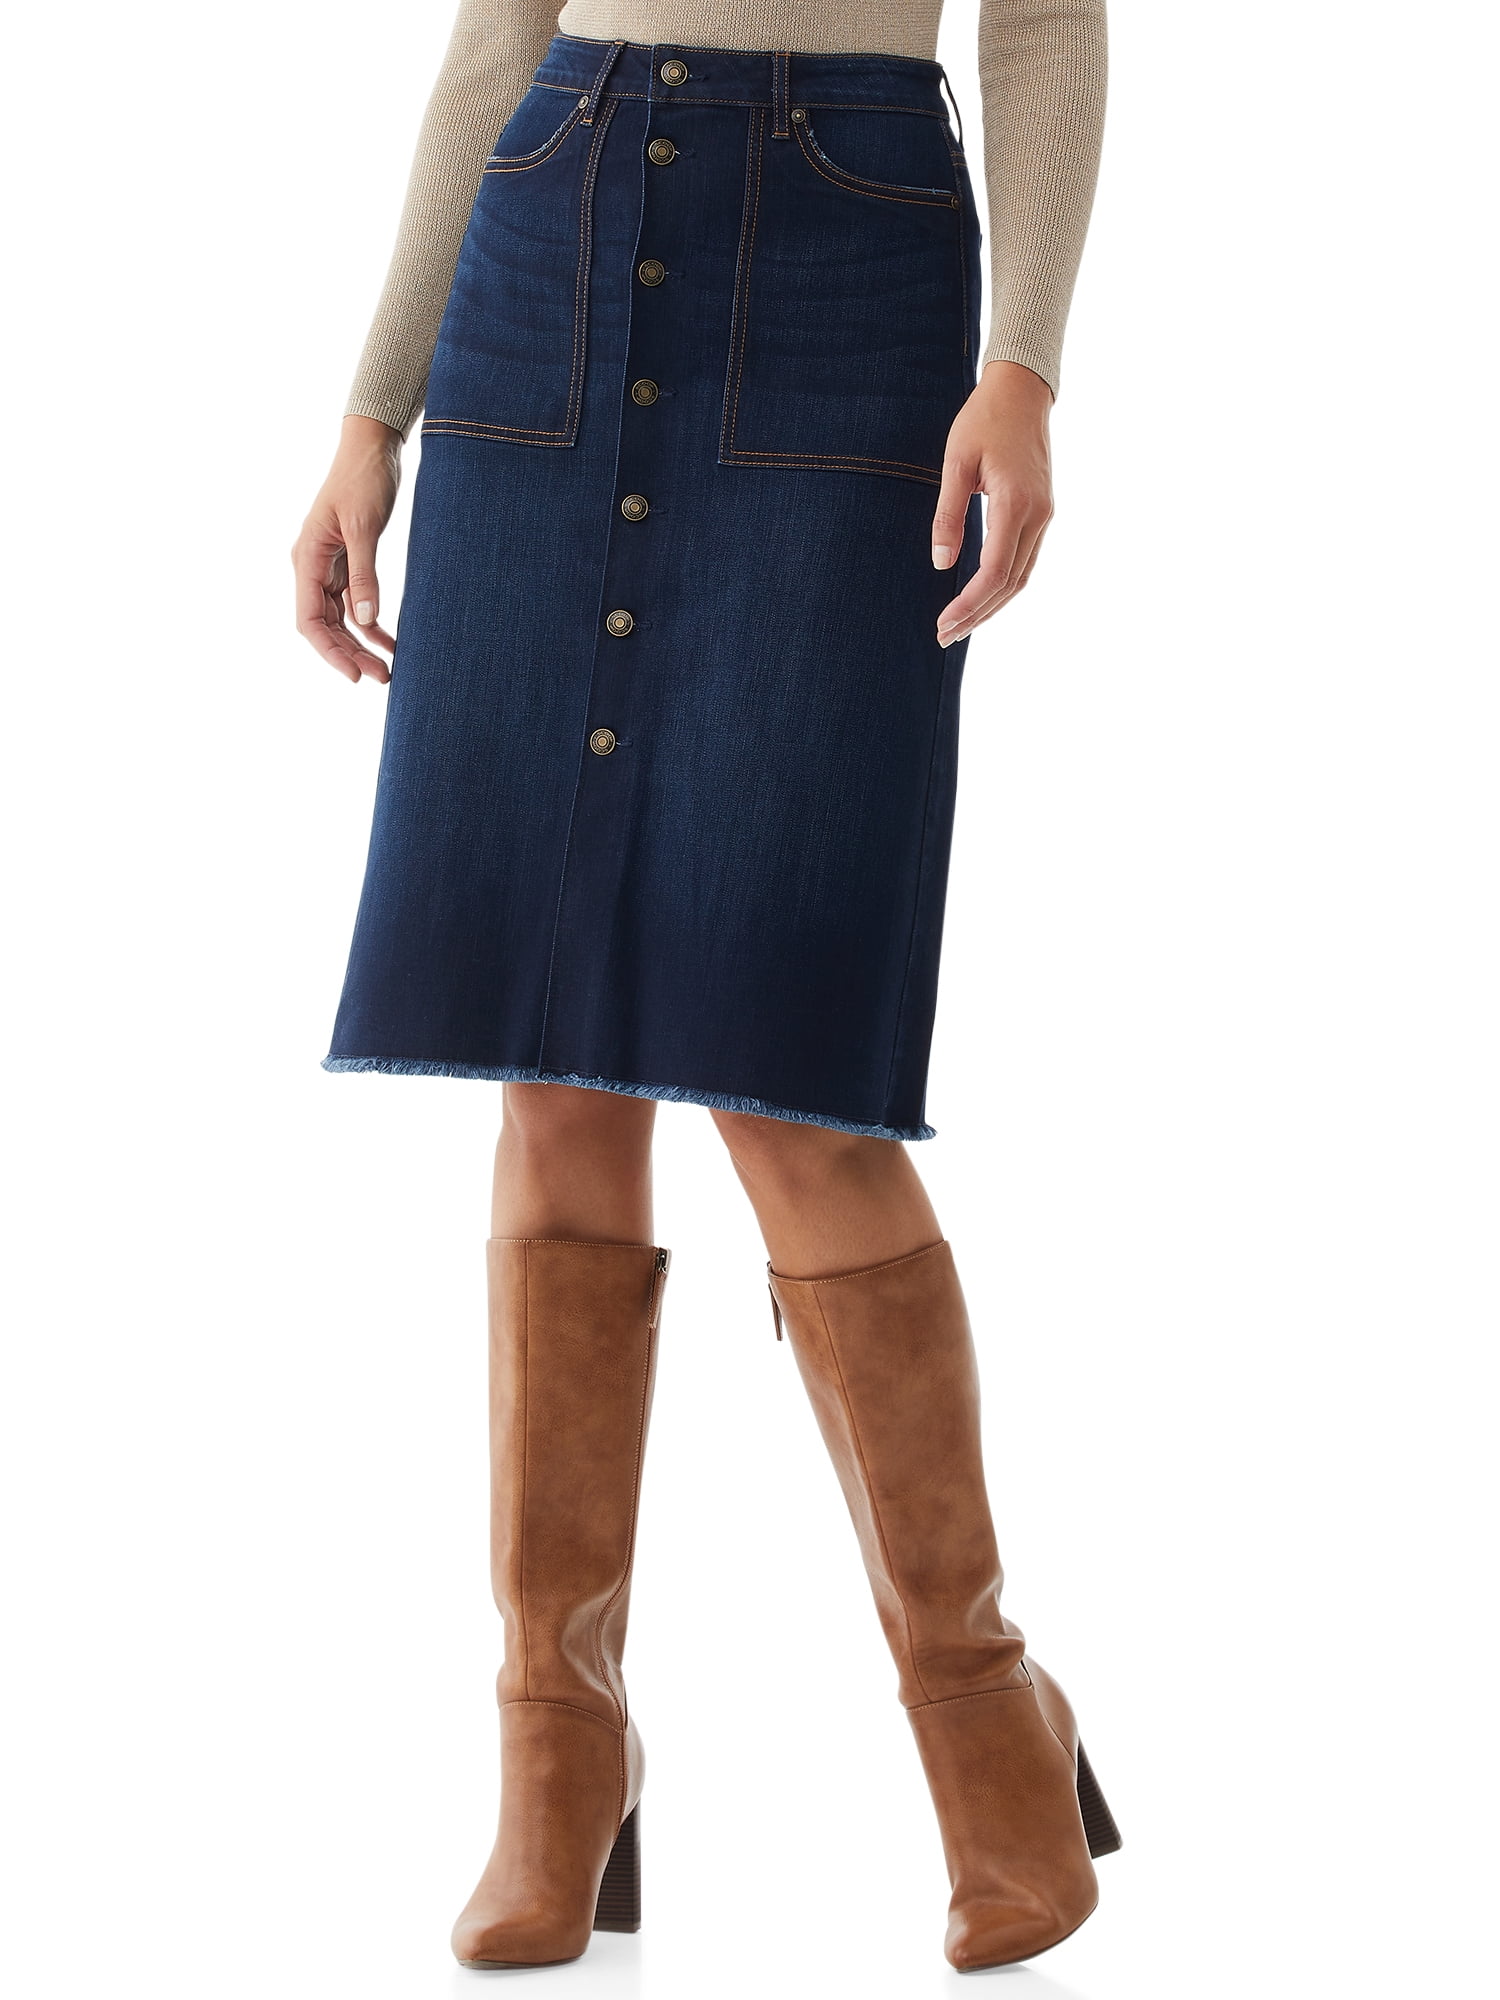 Scoop Women’s Denim Boot Skirt - Walmart.com